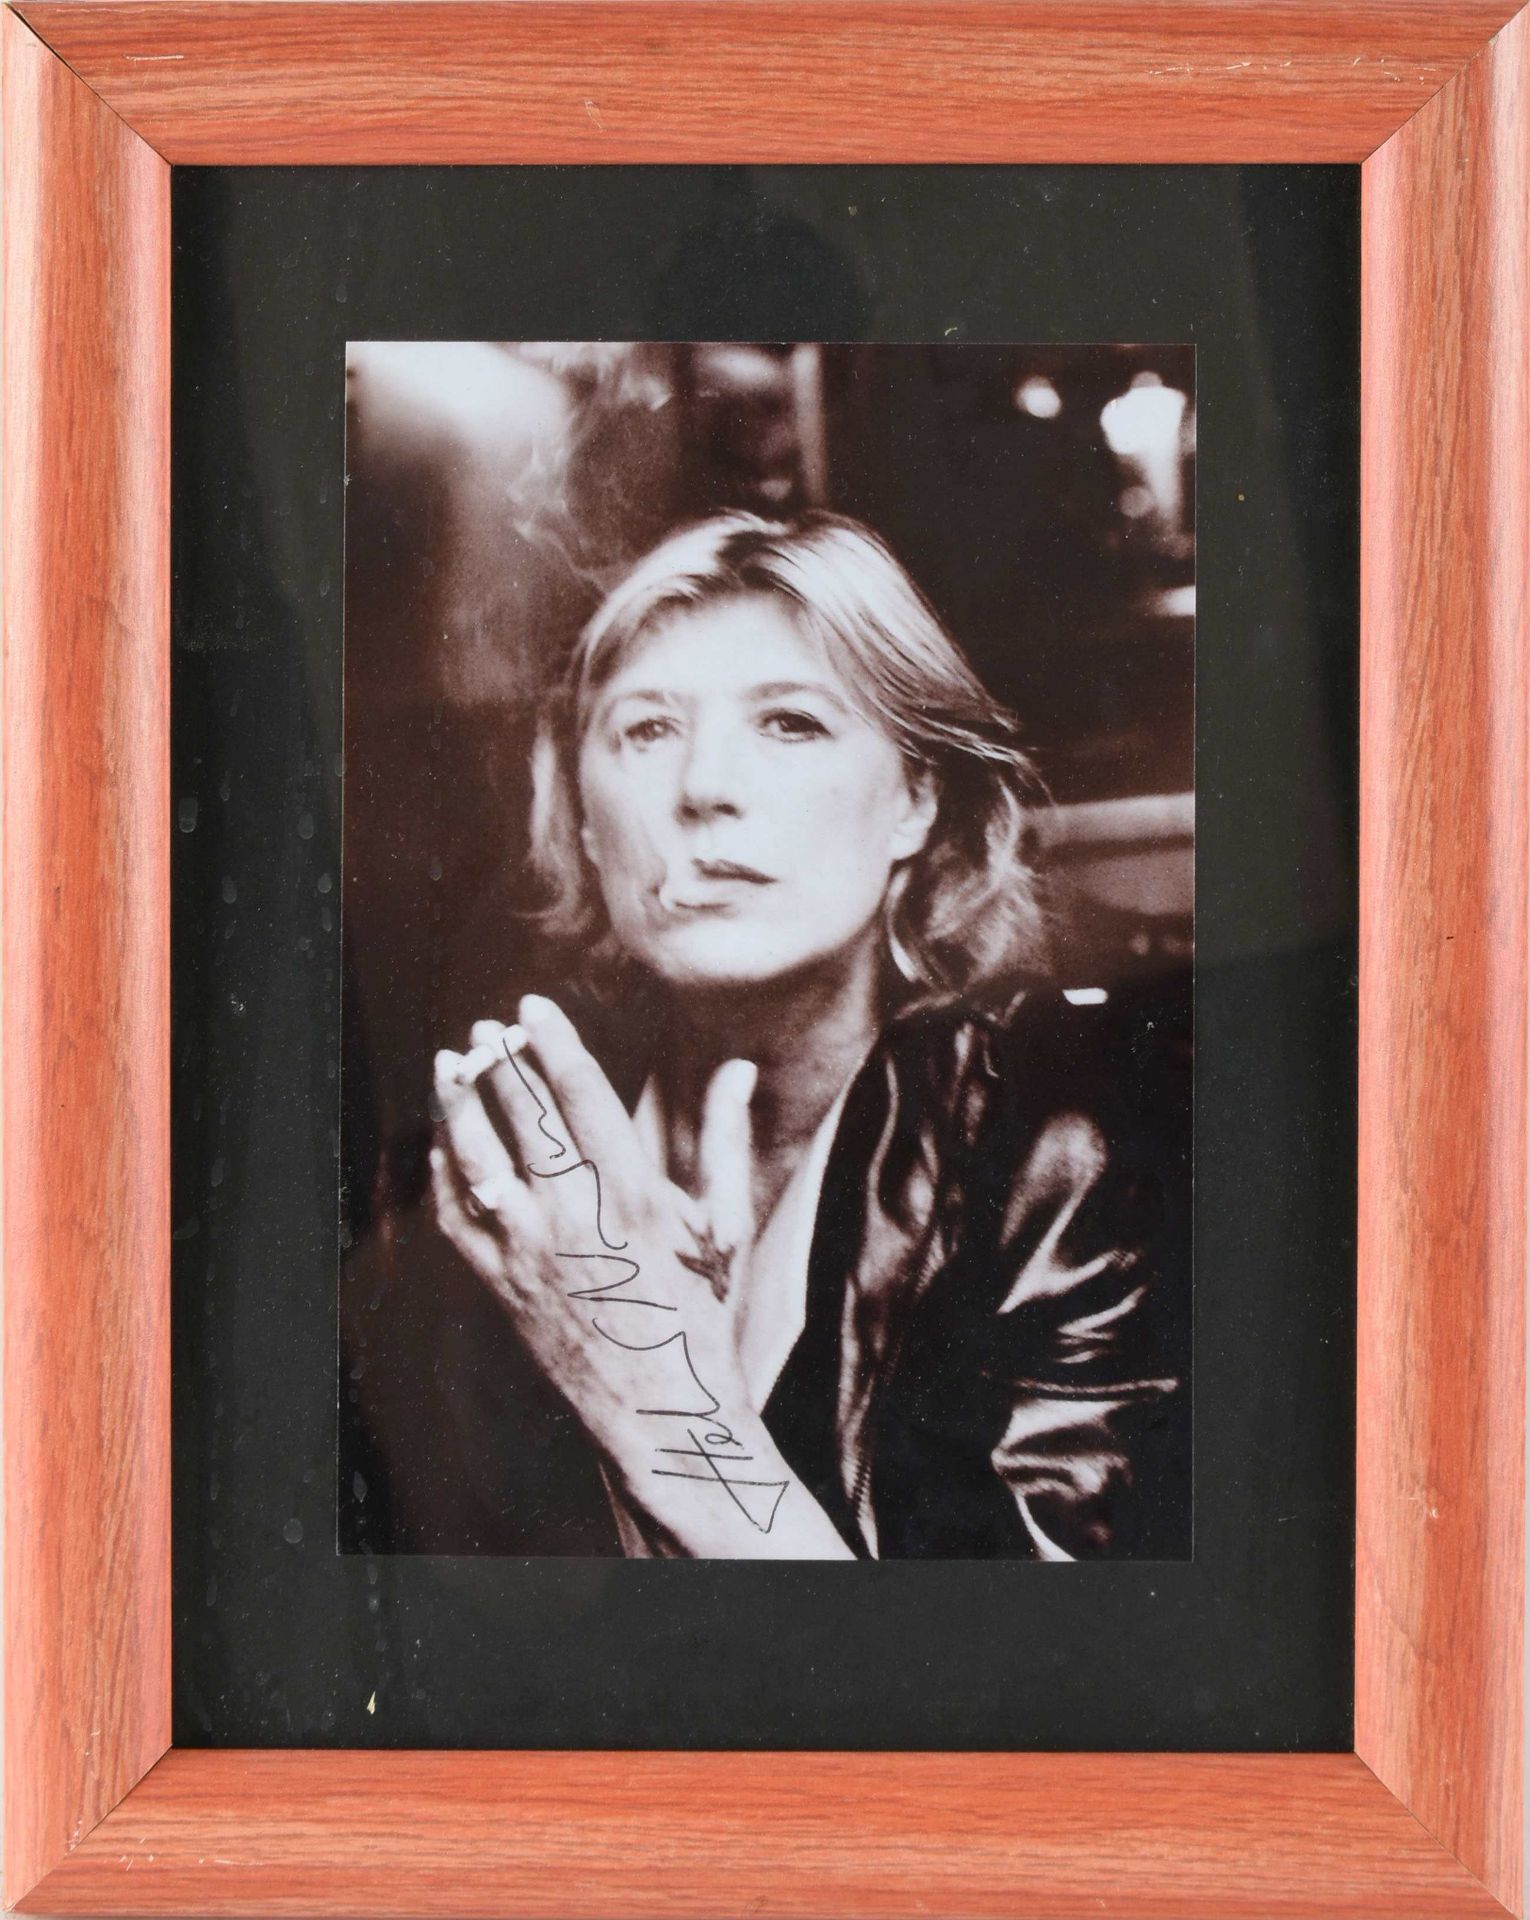 Newton, Helmut ? Fotoabzug, schwarz-weiß, Frau mit offenen Haaren und Zigarette, im Bild signiert, - Bild 3 aus 3